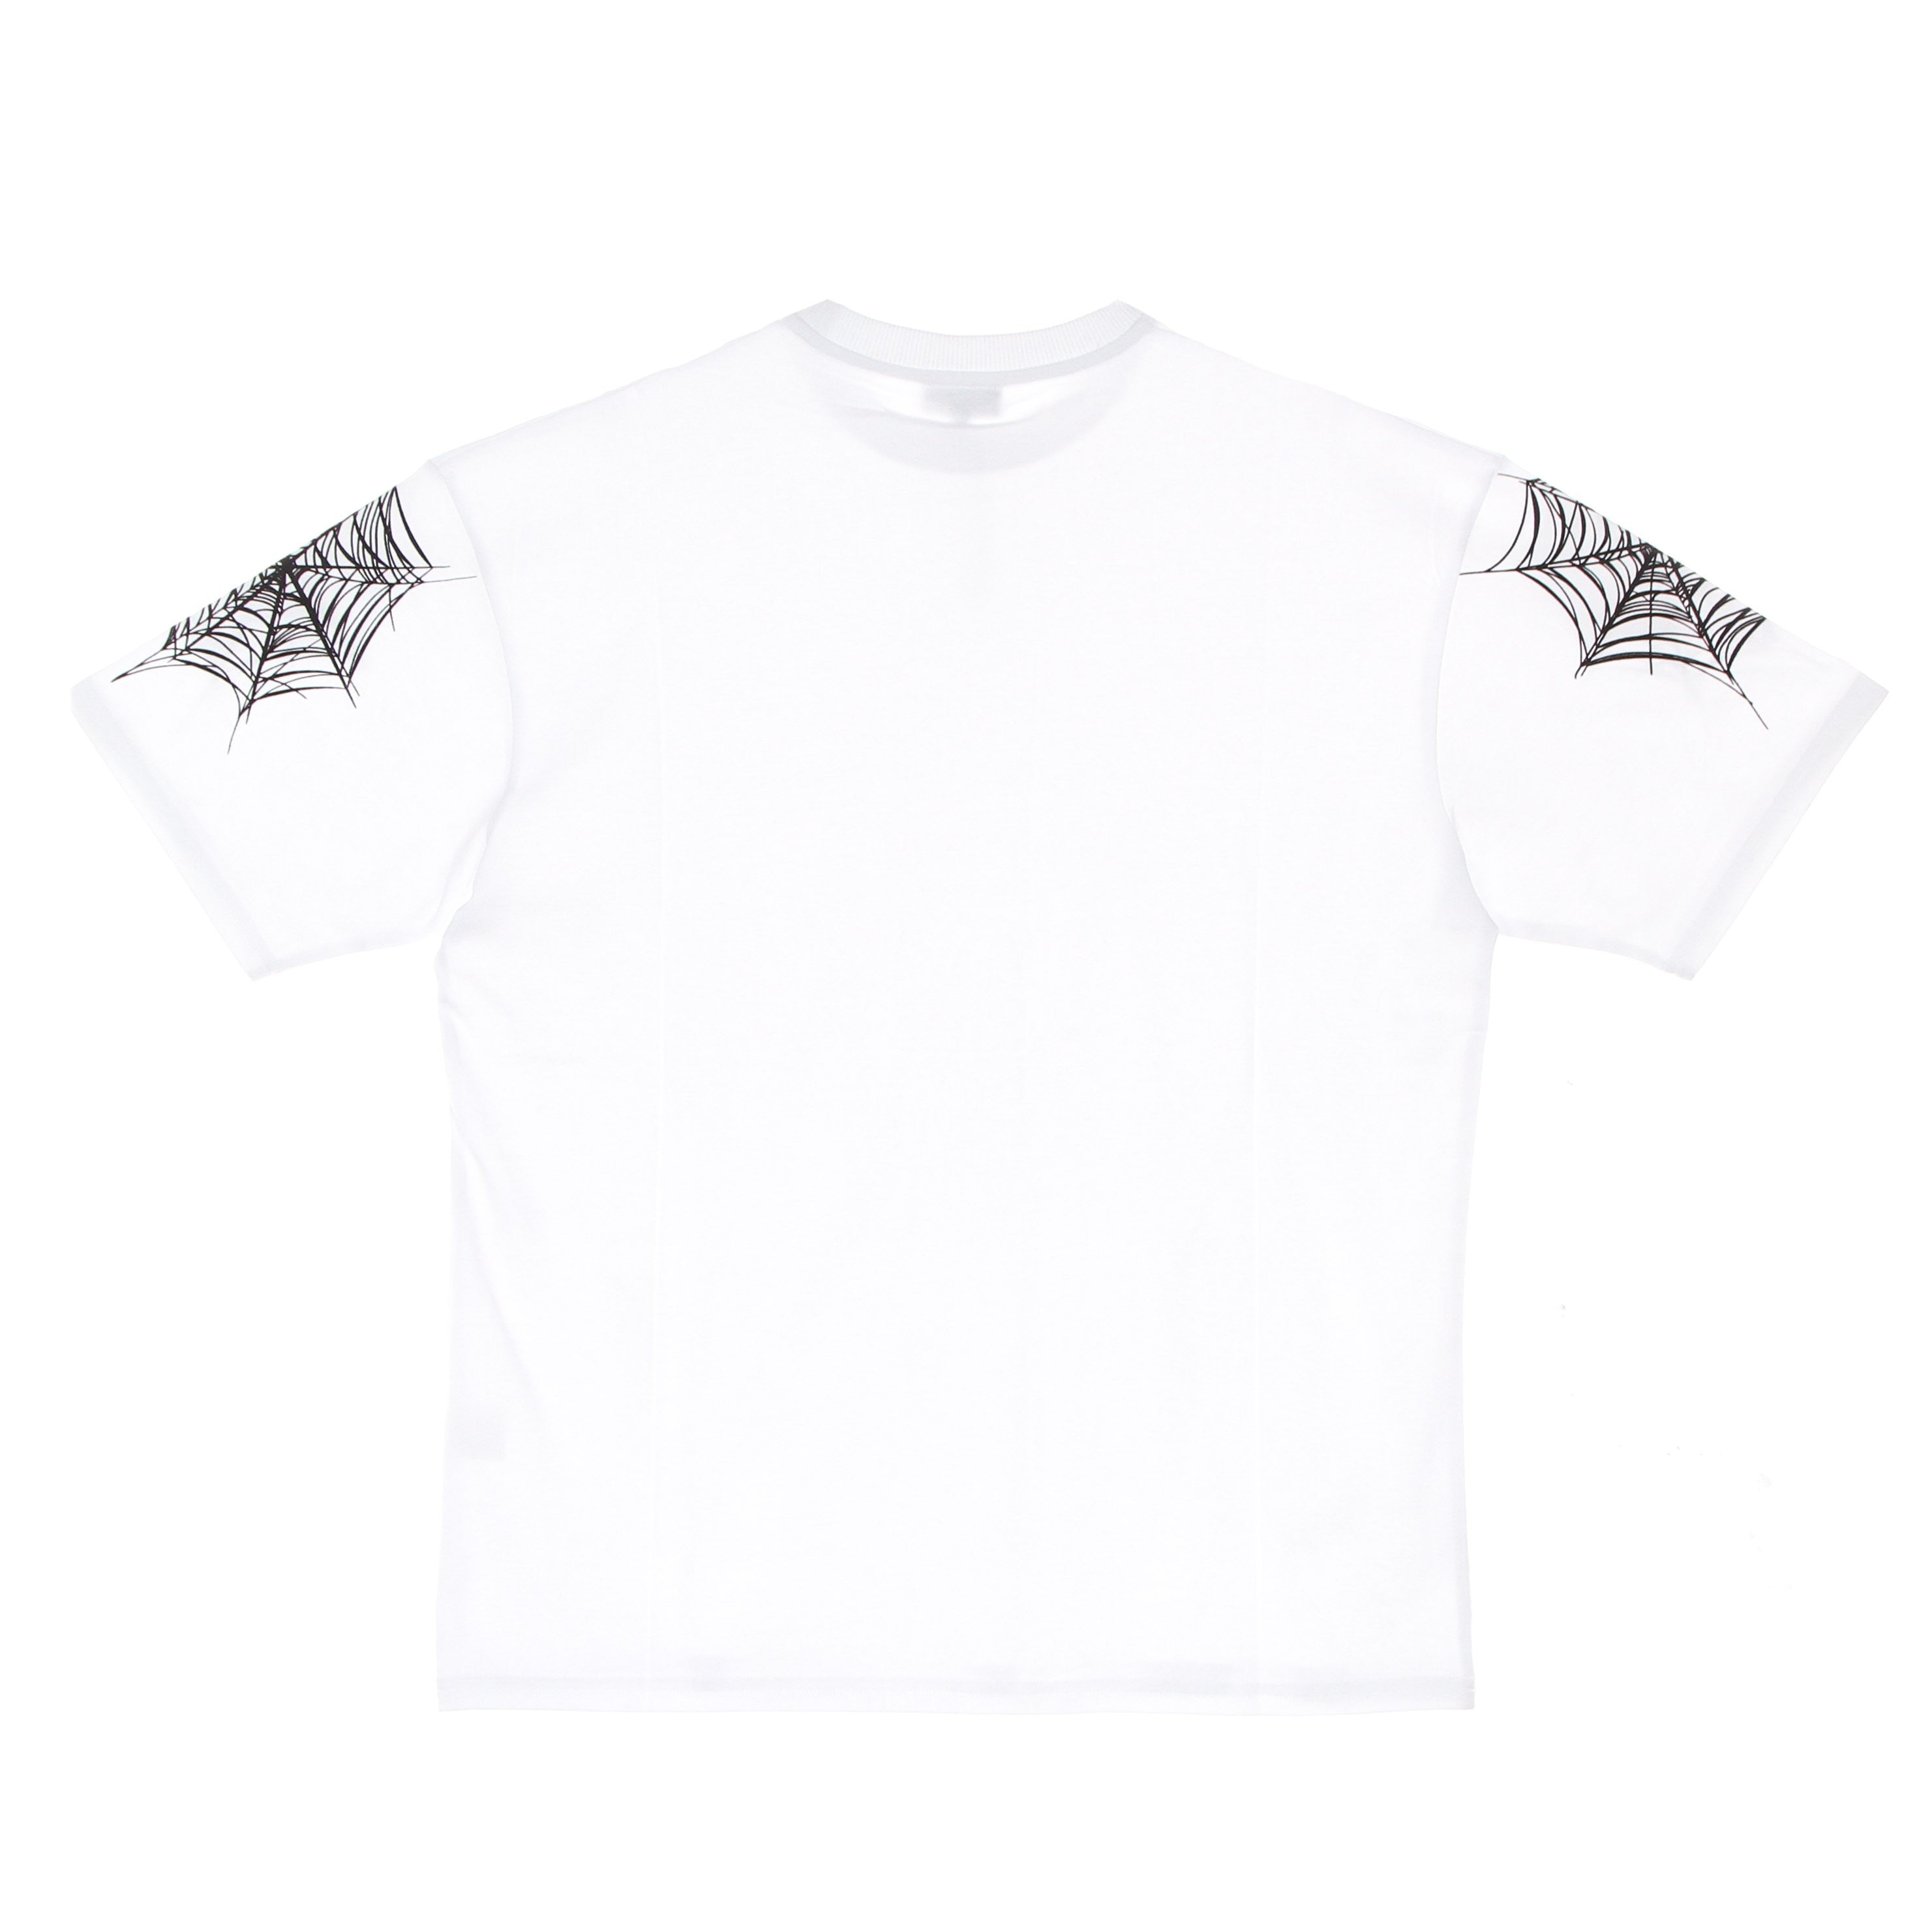 Cobweb Print Tee Men's T-Shirt White/black